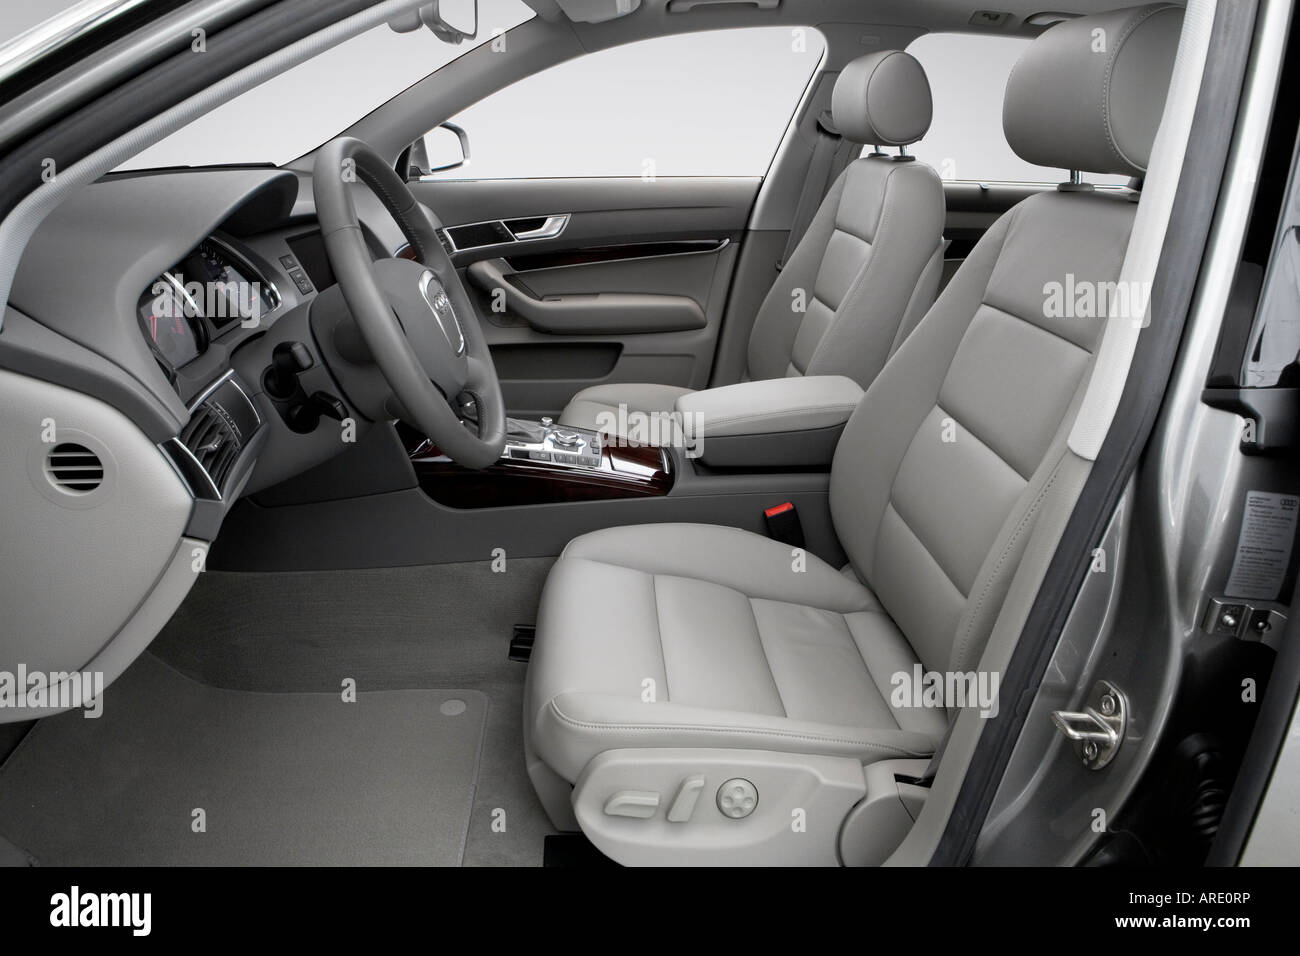 2006 Audi A6 Avant 3.2 quattro en gris - sièges avant Banque D'Images